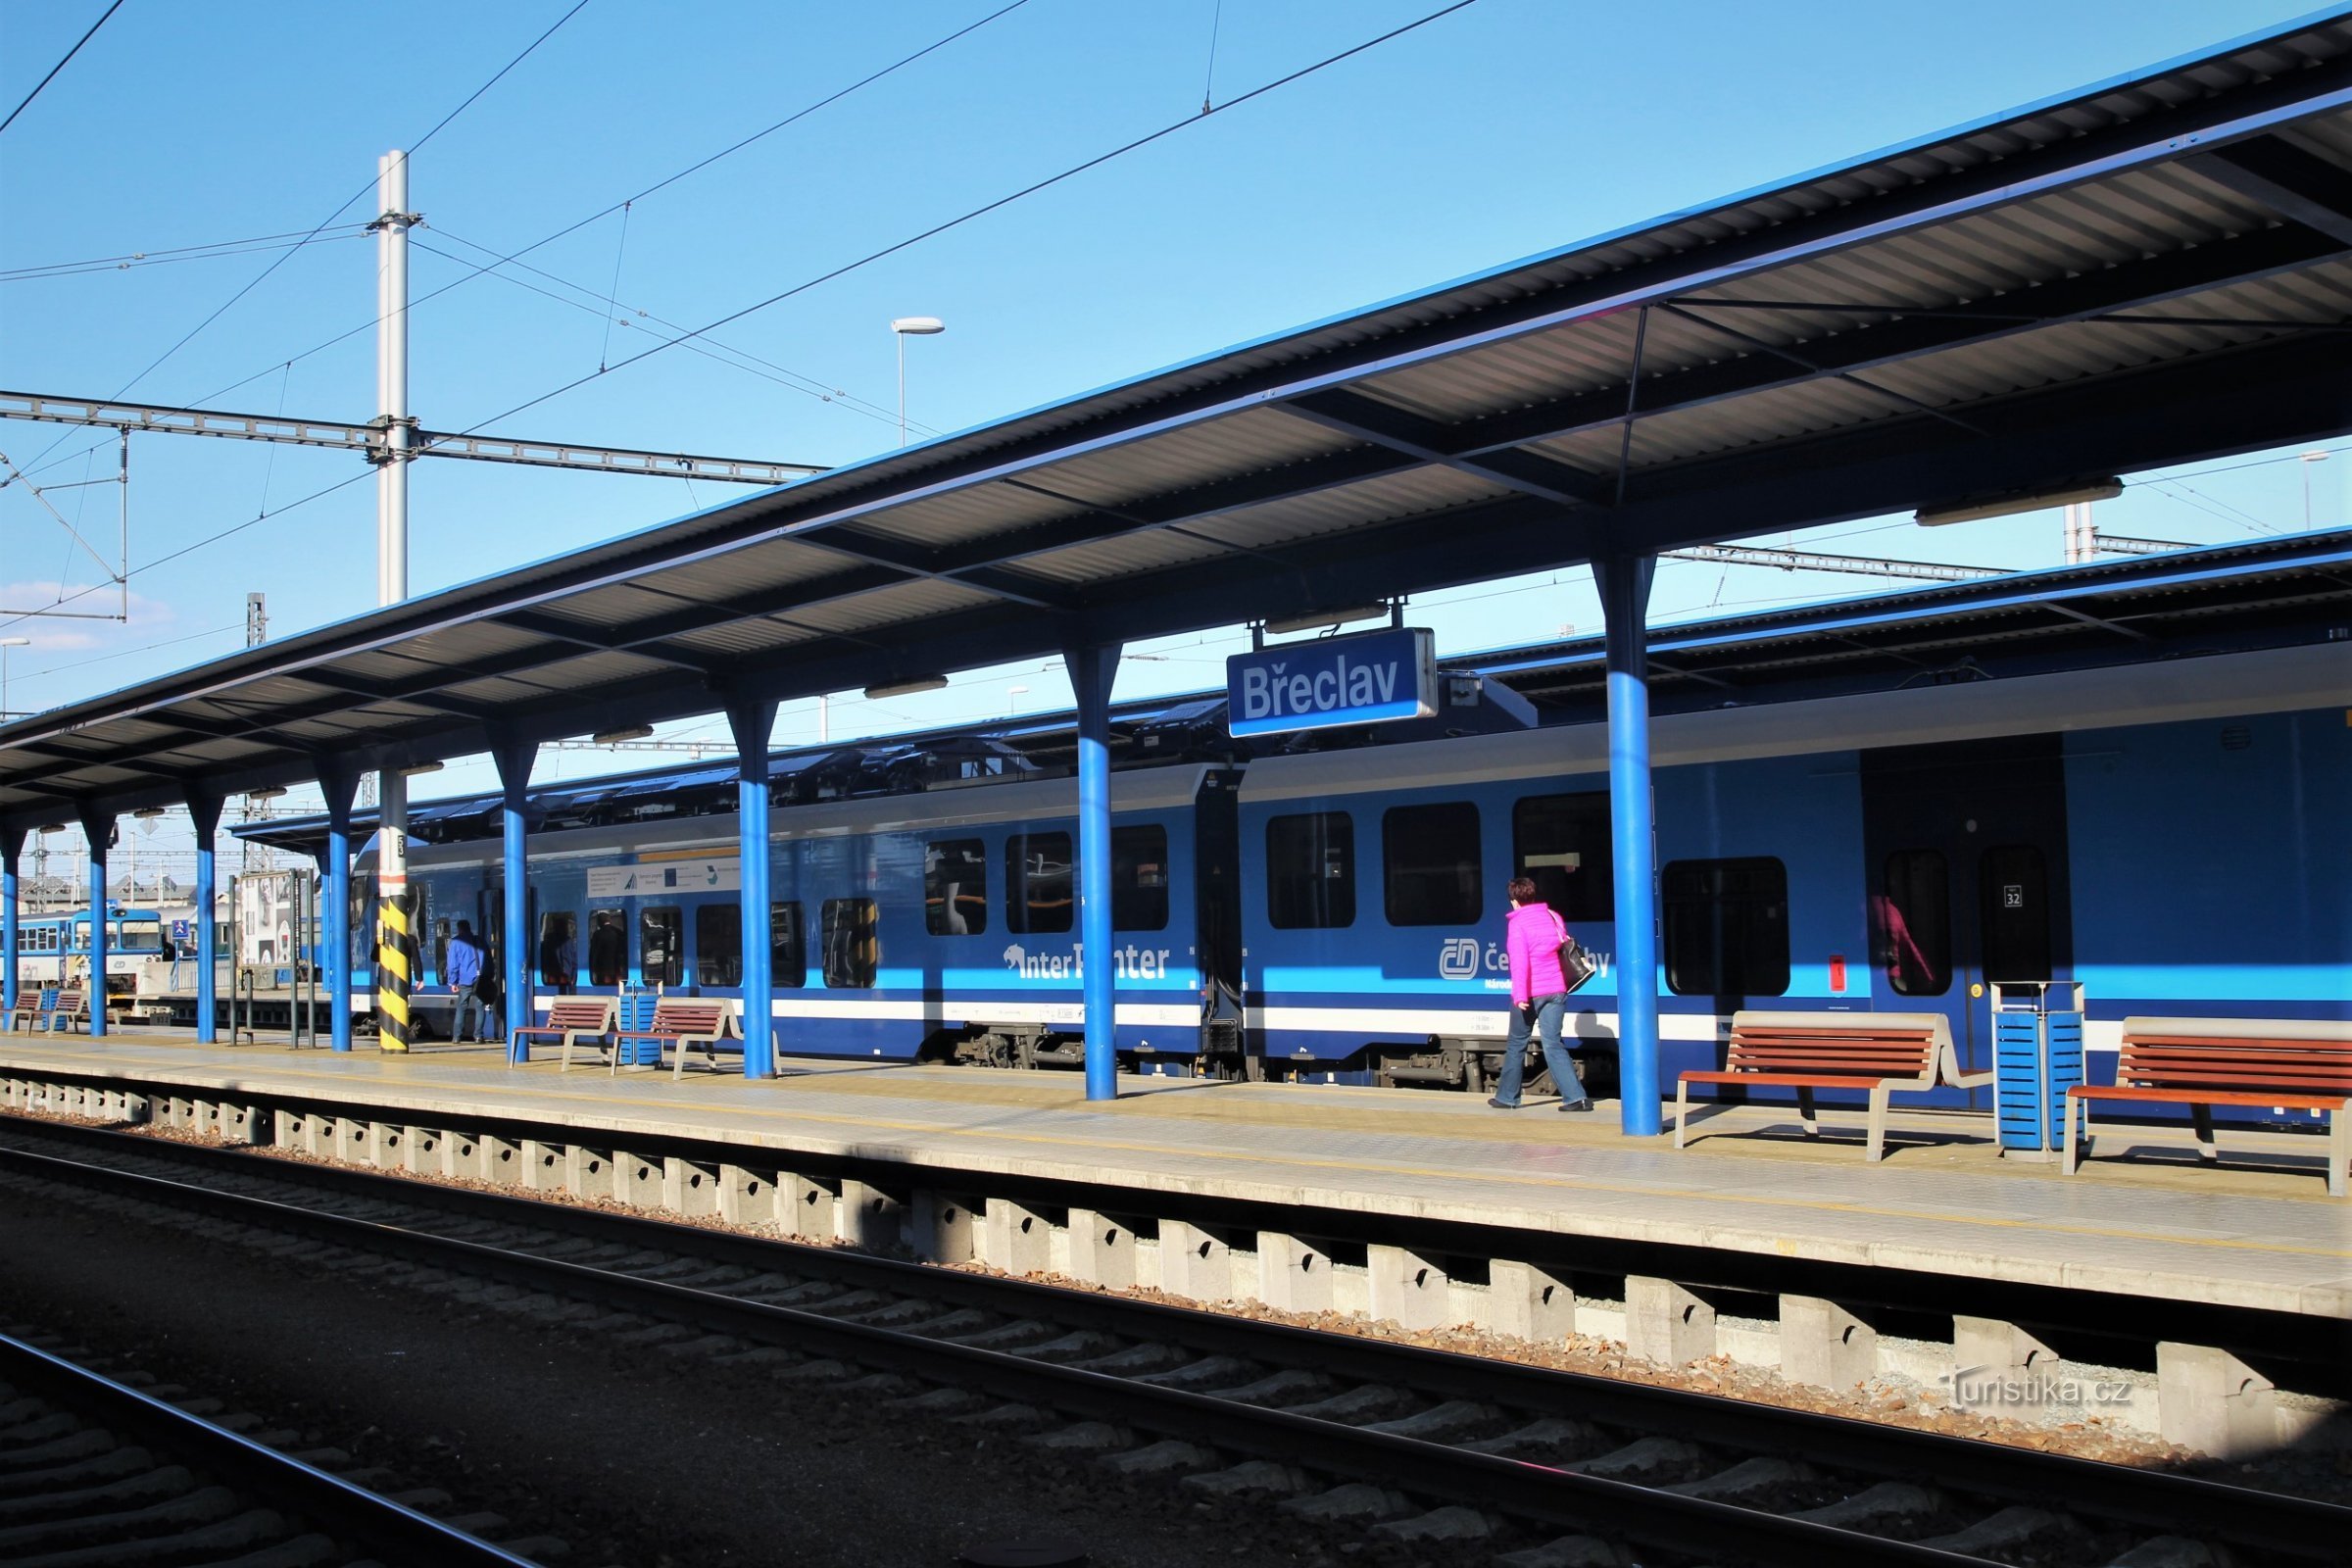 Dworzec kolejowy Brzecław